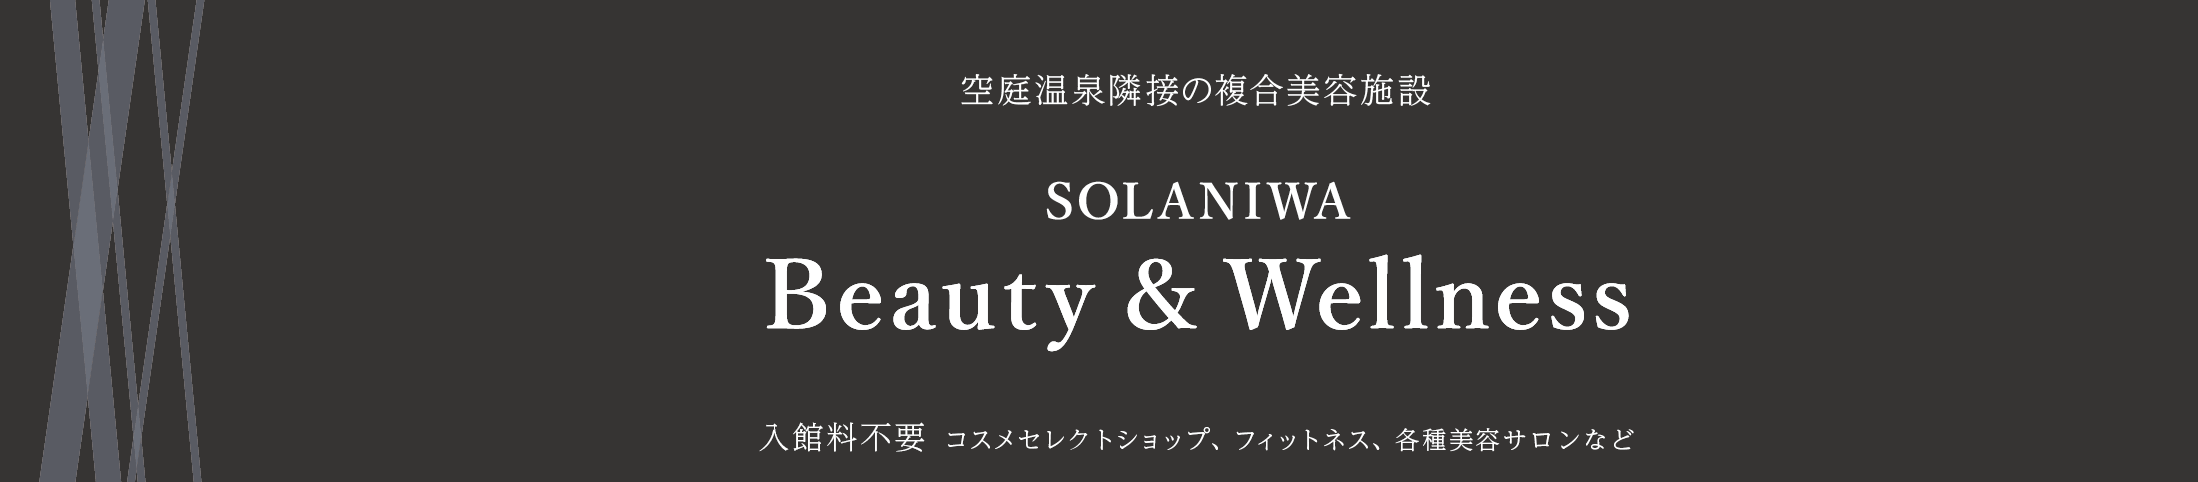 空庭温泉隣接の複合美容施設 SOLANIWA Beauty & Wellness 入館料不要 コスメセレクトショップ、フィットネス、各種美容サロンなど